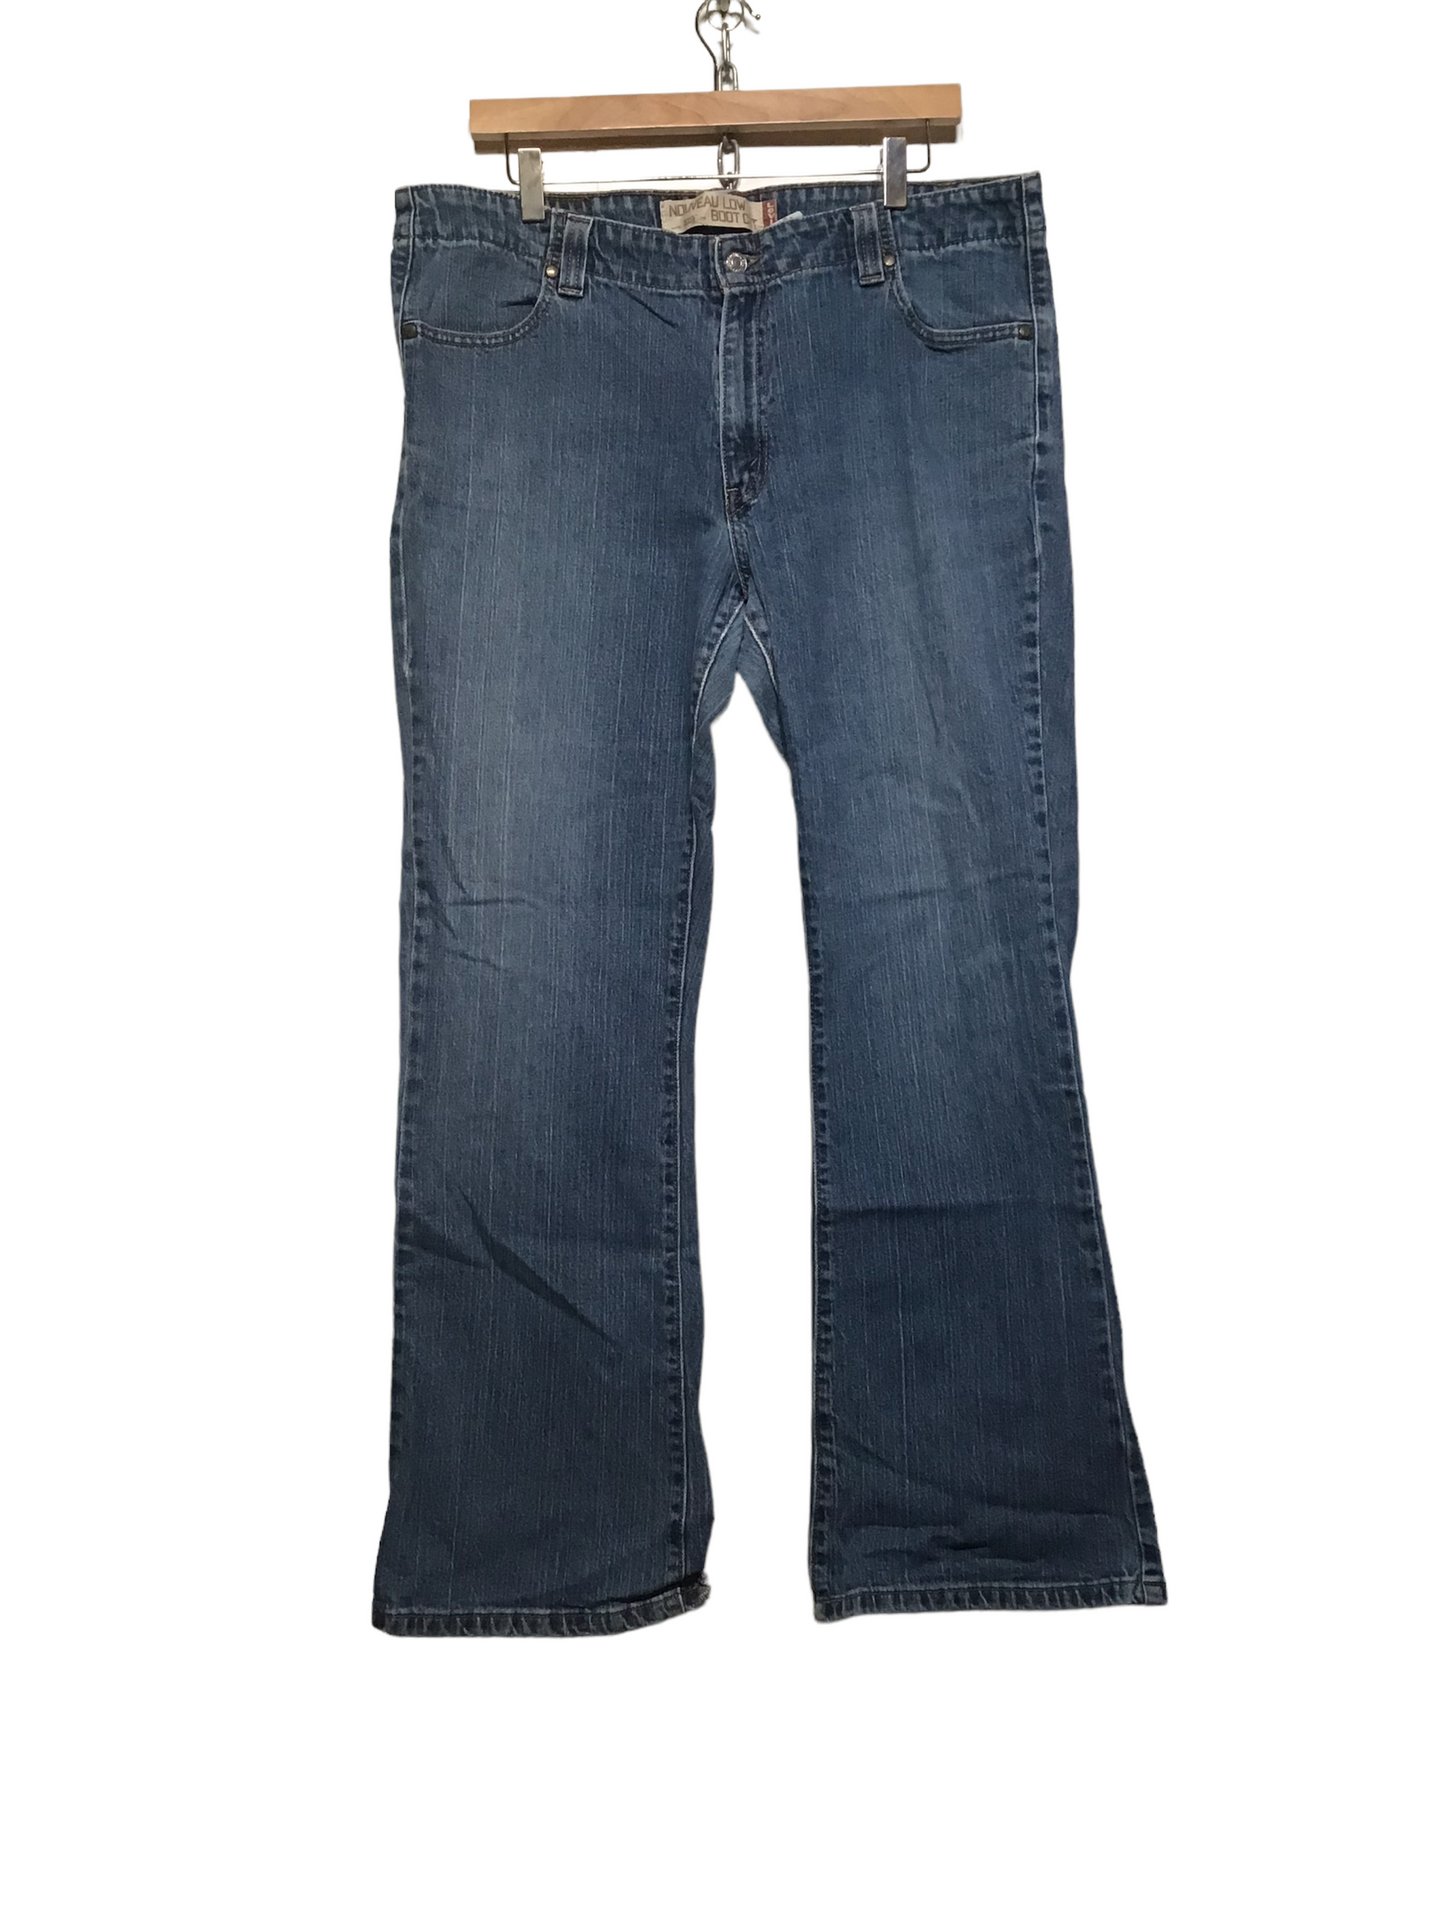 Levi 525 Jeans (38X32)